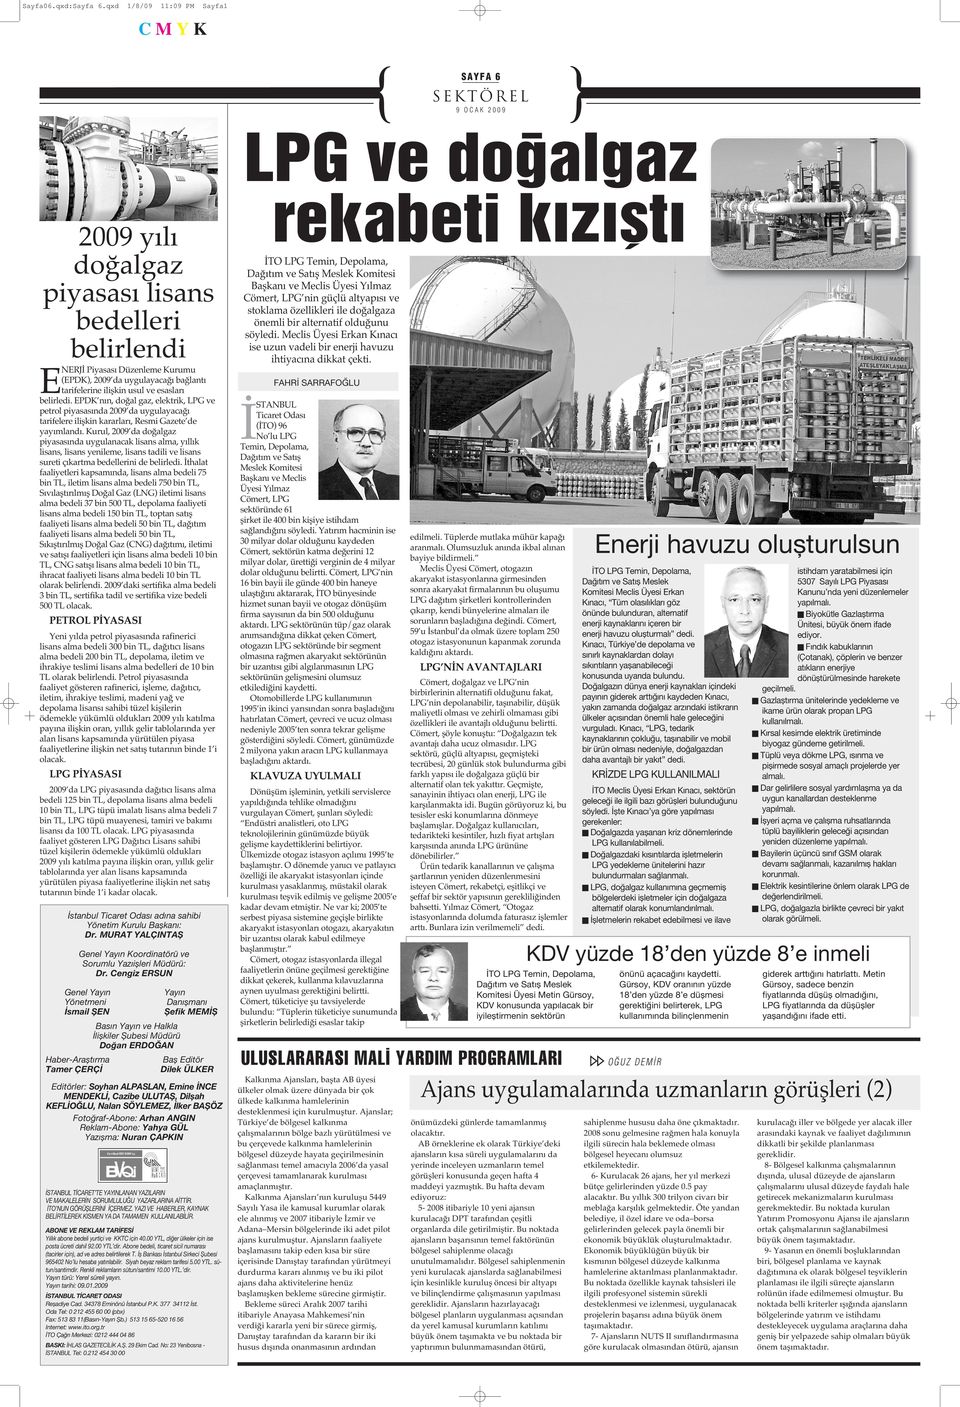 belirledi. EPDK nın, doğal gaz, elektrik, LPG ve petrol piyasasında 2009 da uygulayacağı tarifelere ilişkin kararları, Resmi Gazete de yayımlandı.